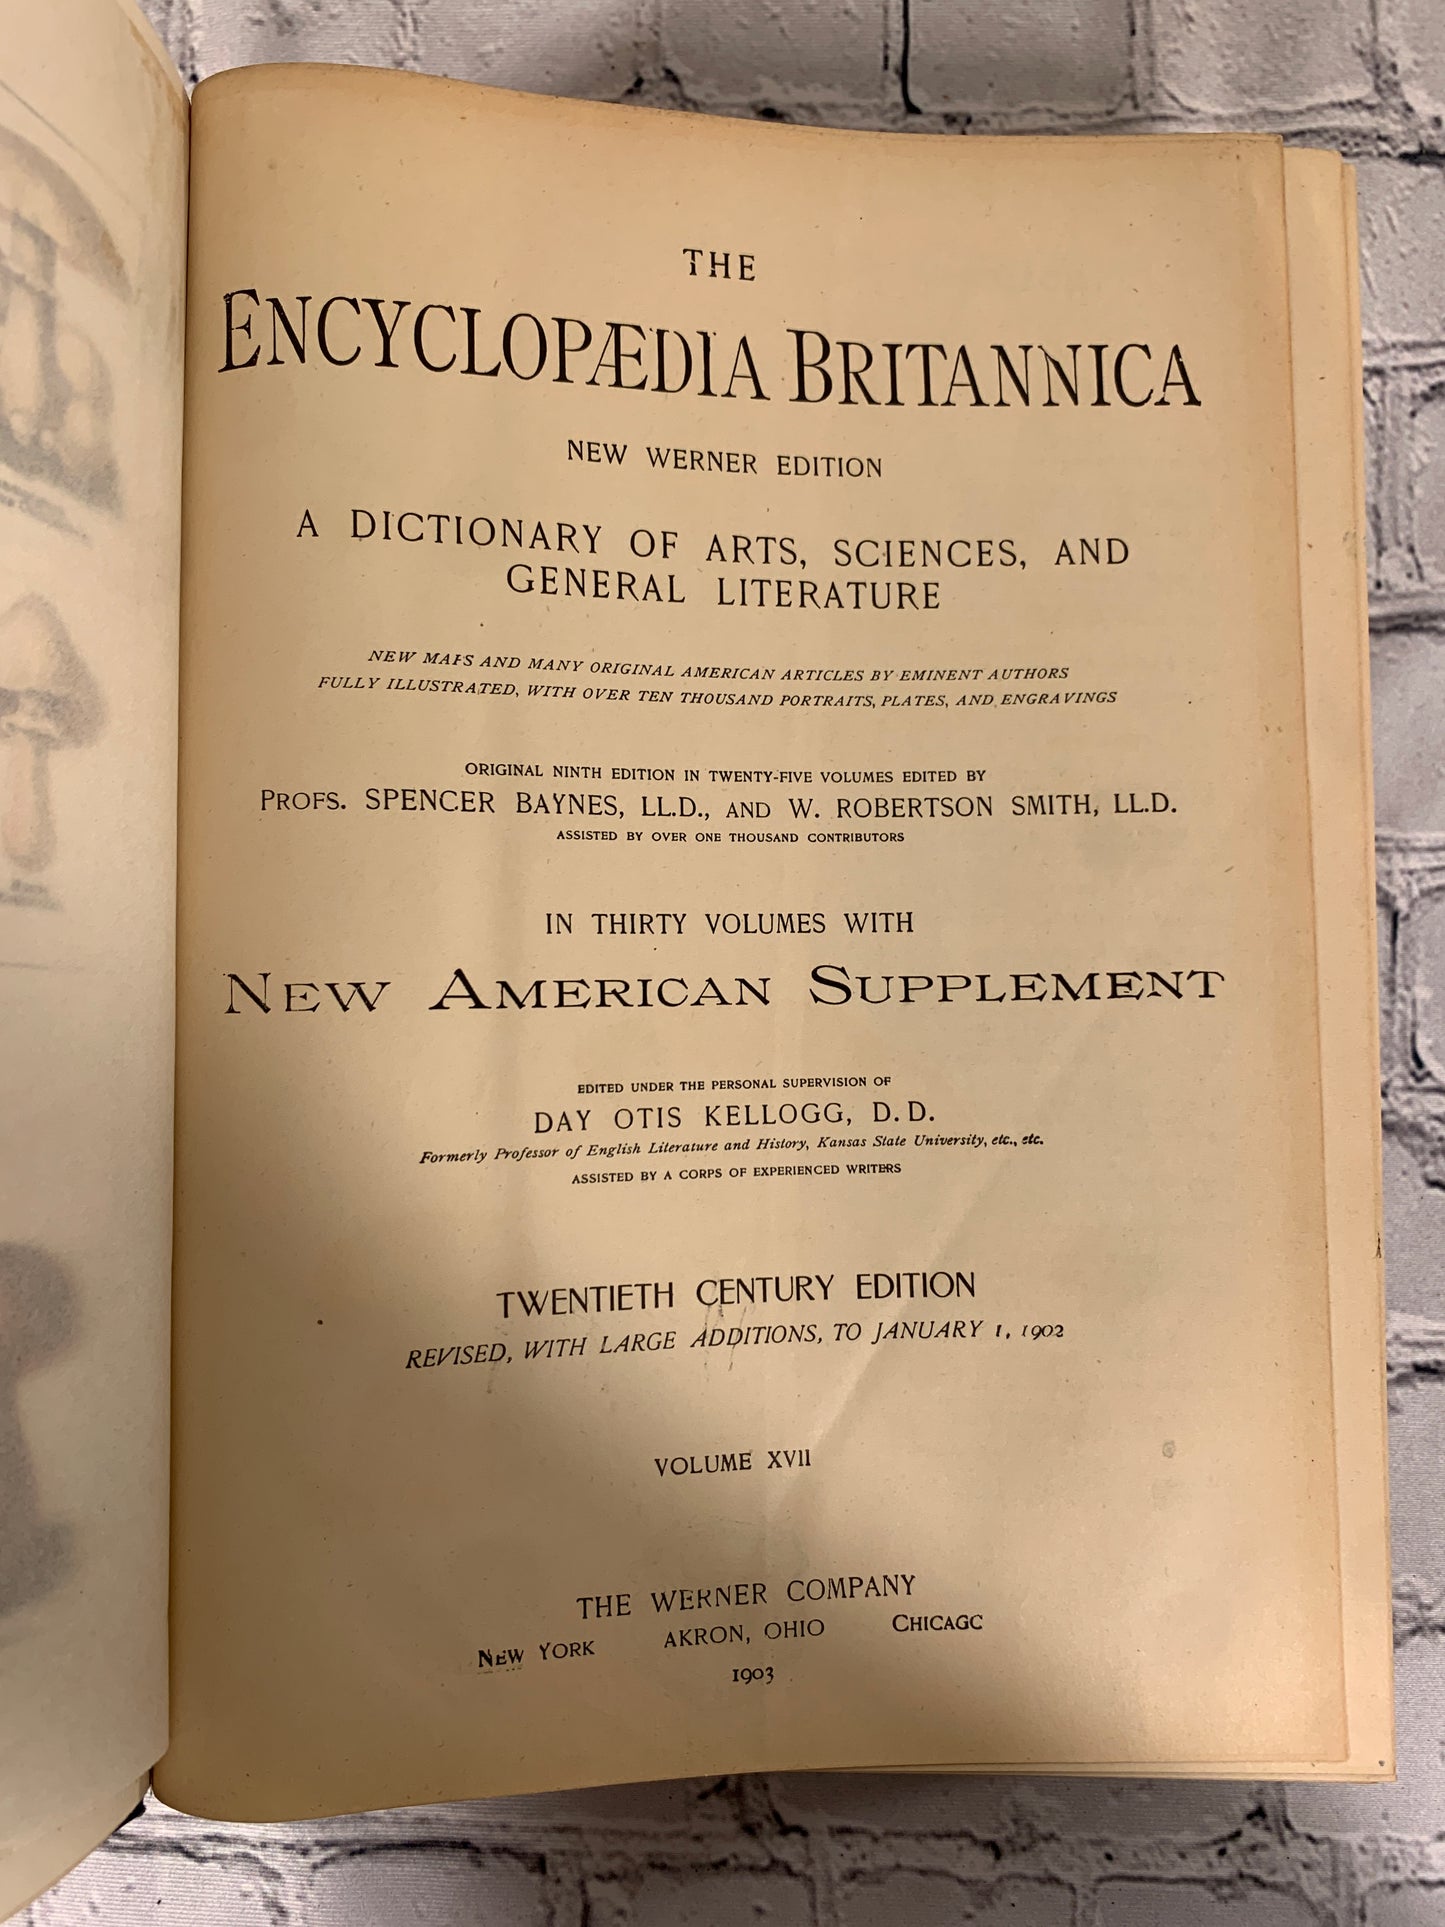 The Encyclopedia Britannica New Werner Edition Twentieth Century Vol XVII [1903]